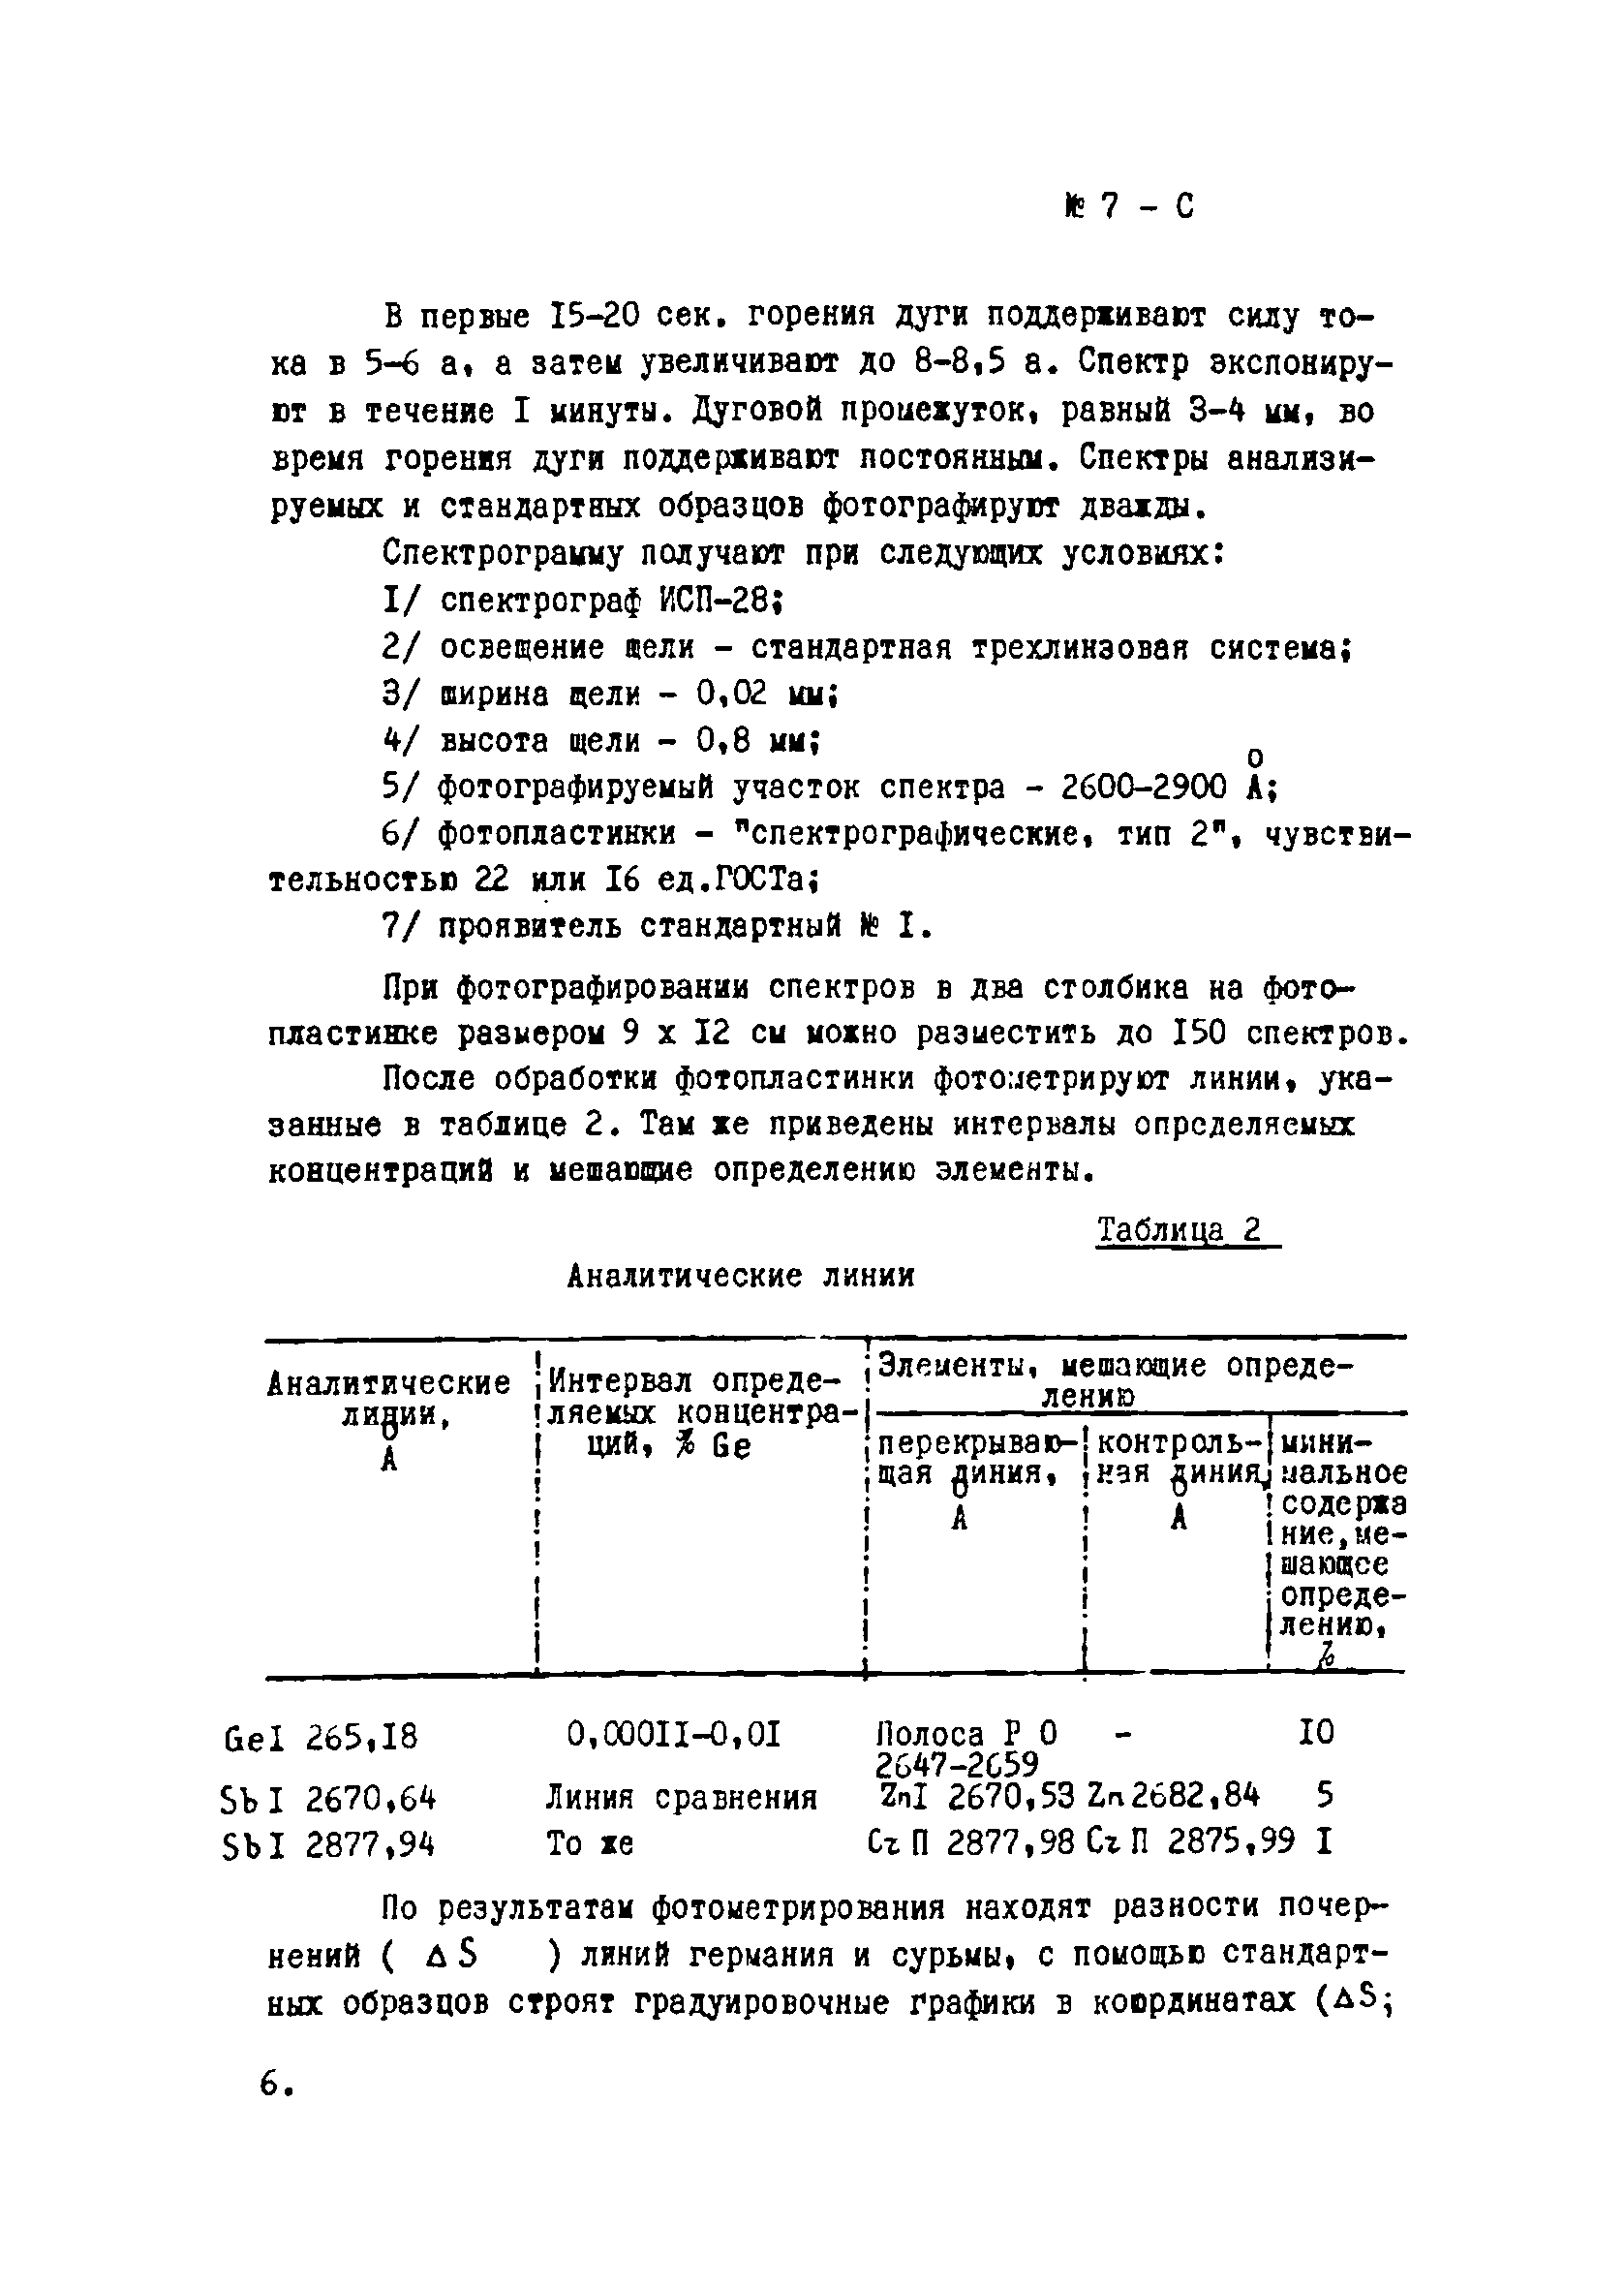 Инструкция НСАМ 7-С